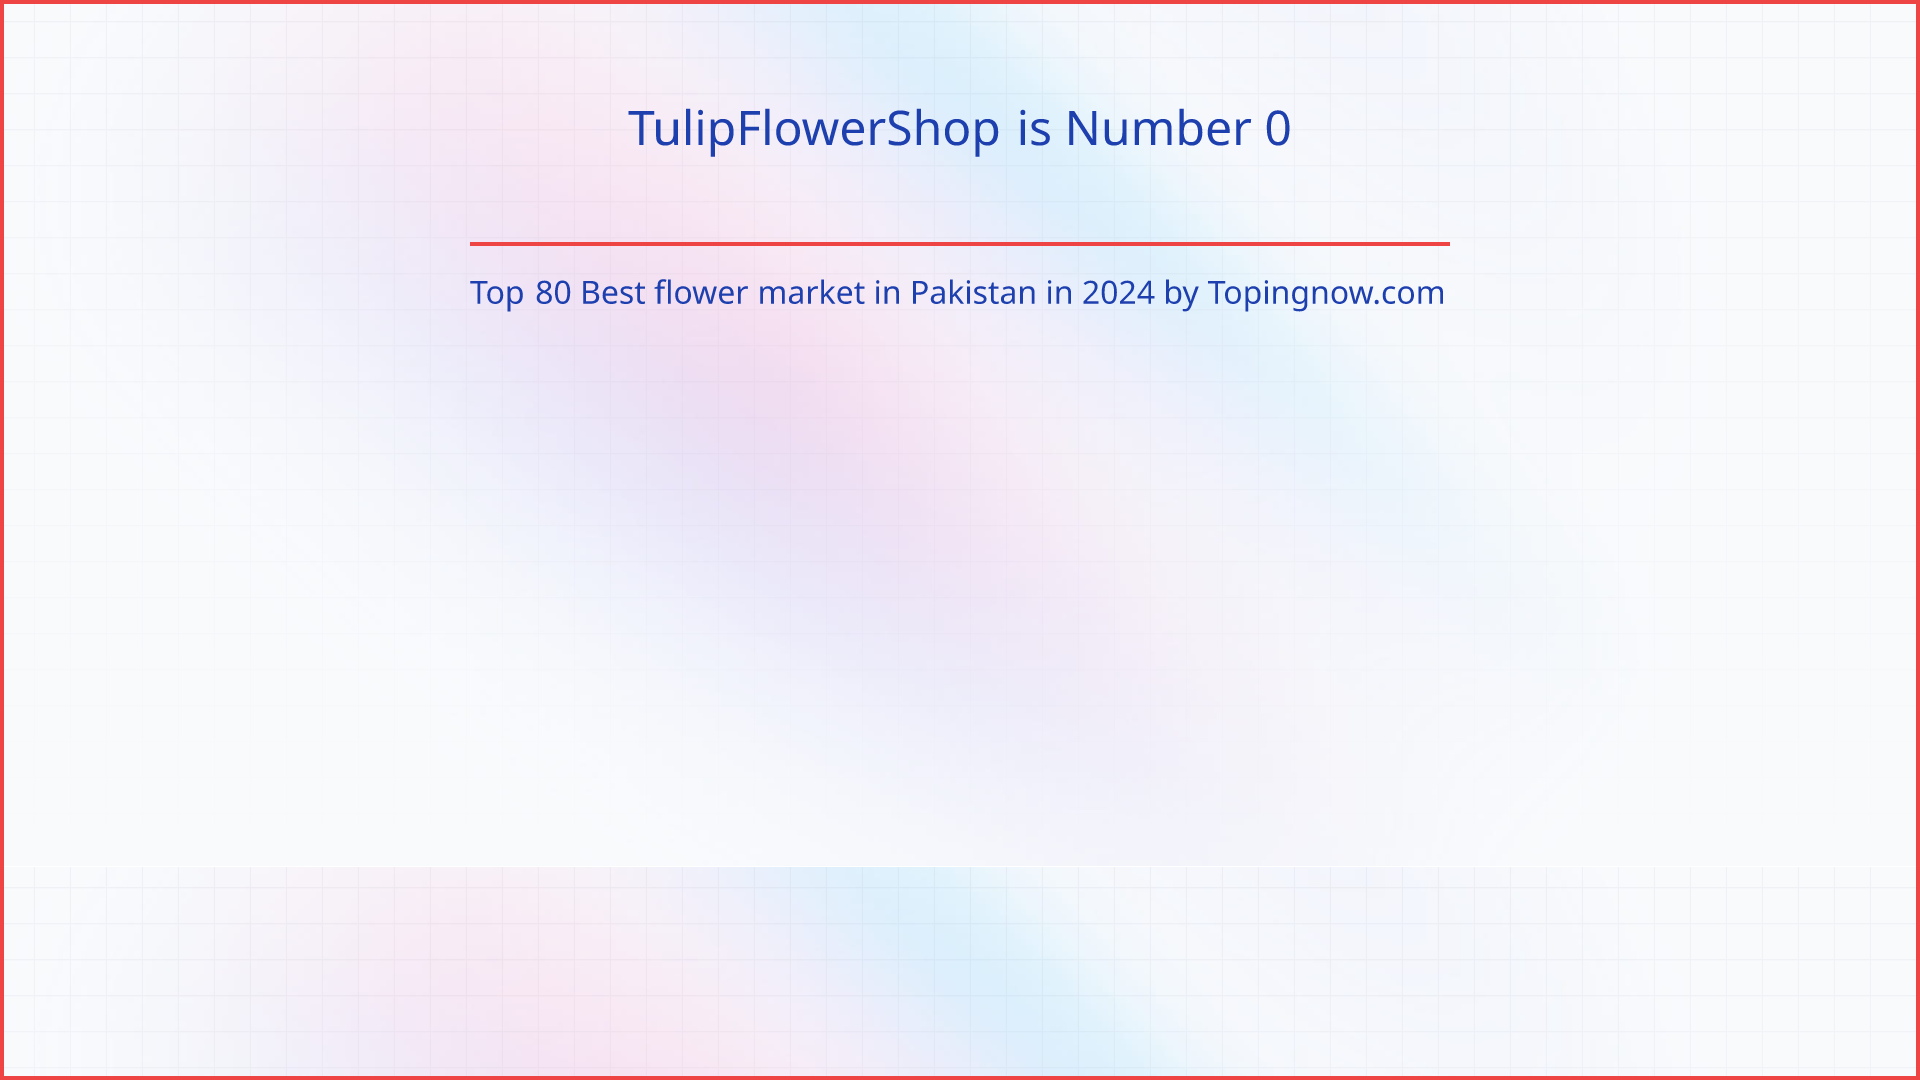 TulipFlowerShop: Top 80 Best flower market in Pakistan in 2024